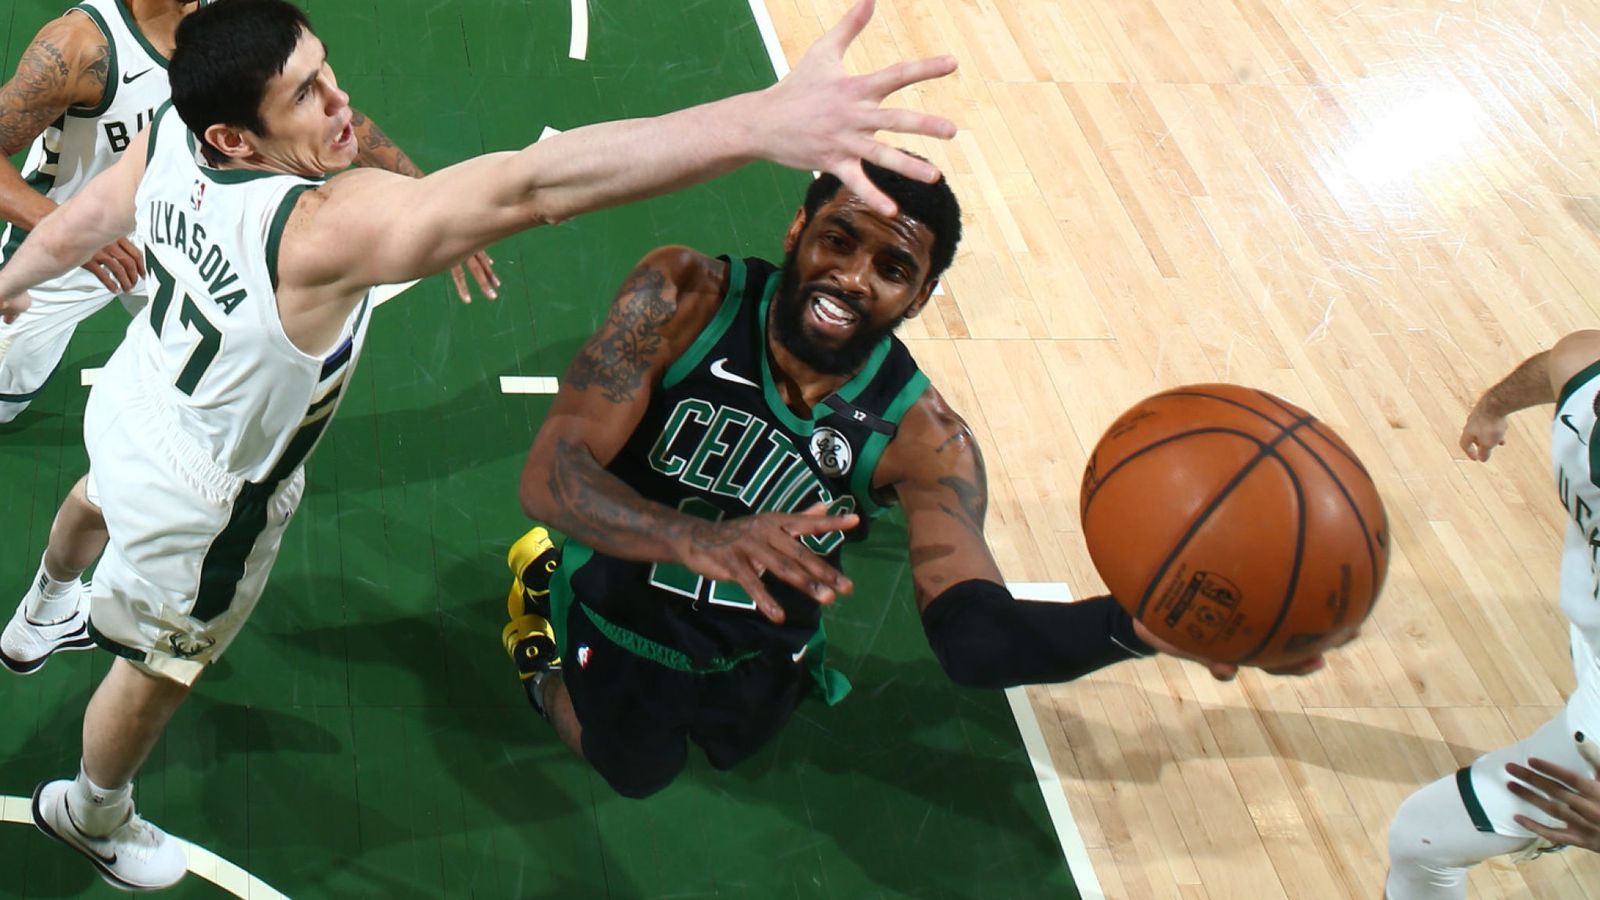 Vô hiệu hóa Antetokounmpo, Celtics chứng minh họ mới là kèo trên trong cuộc đối đầu này